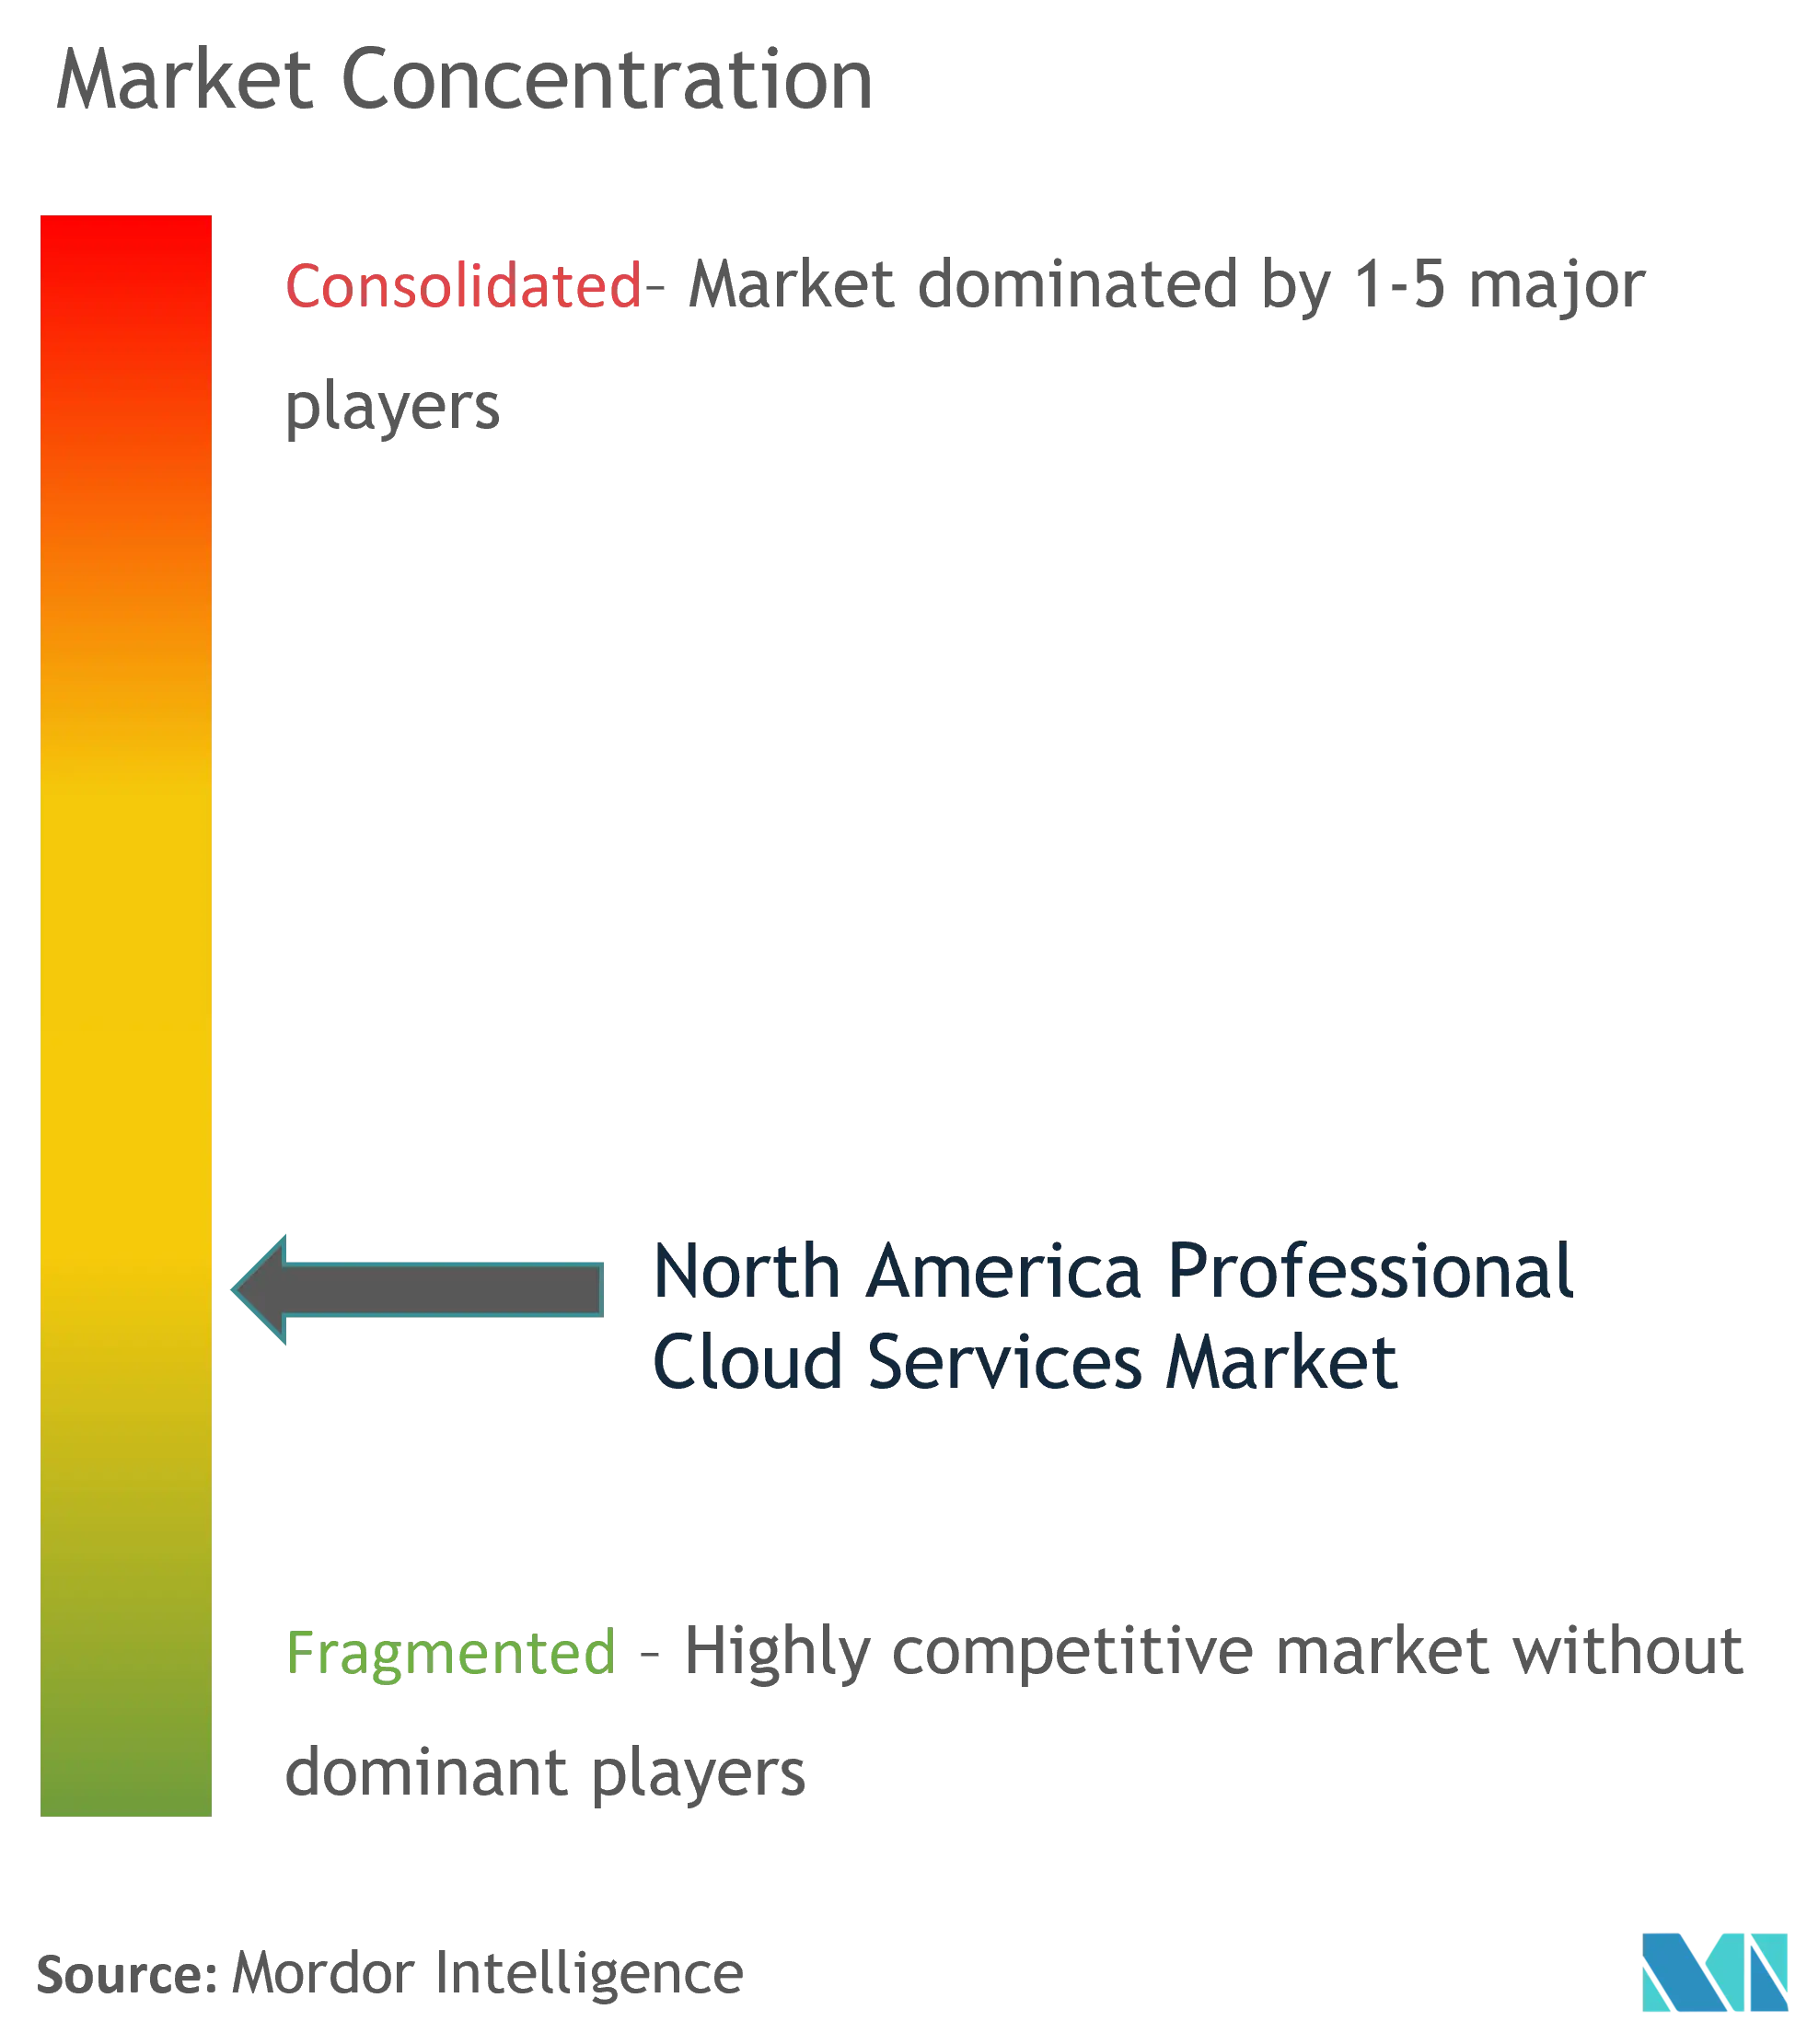 北米プロフェッショナルクラウドサービス市場 - 市場集中度